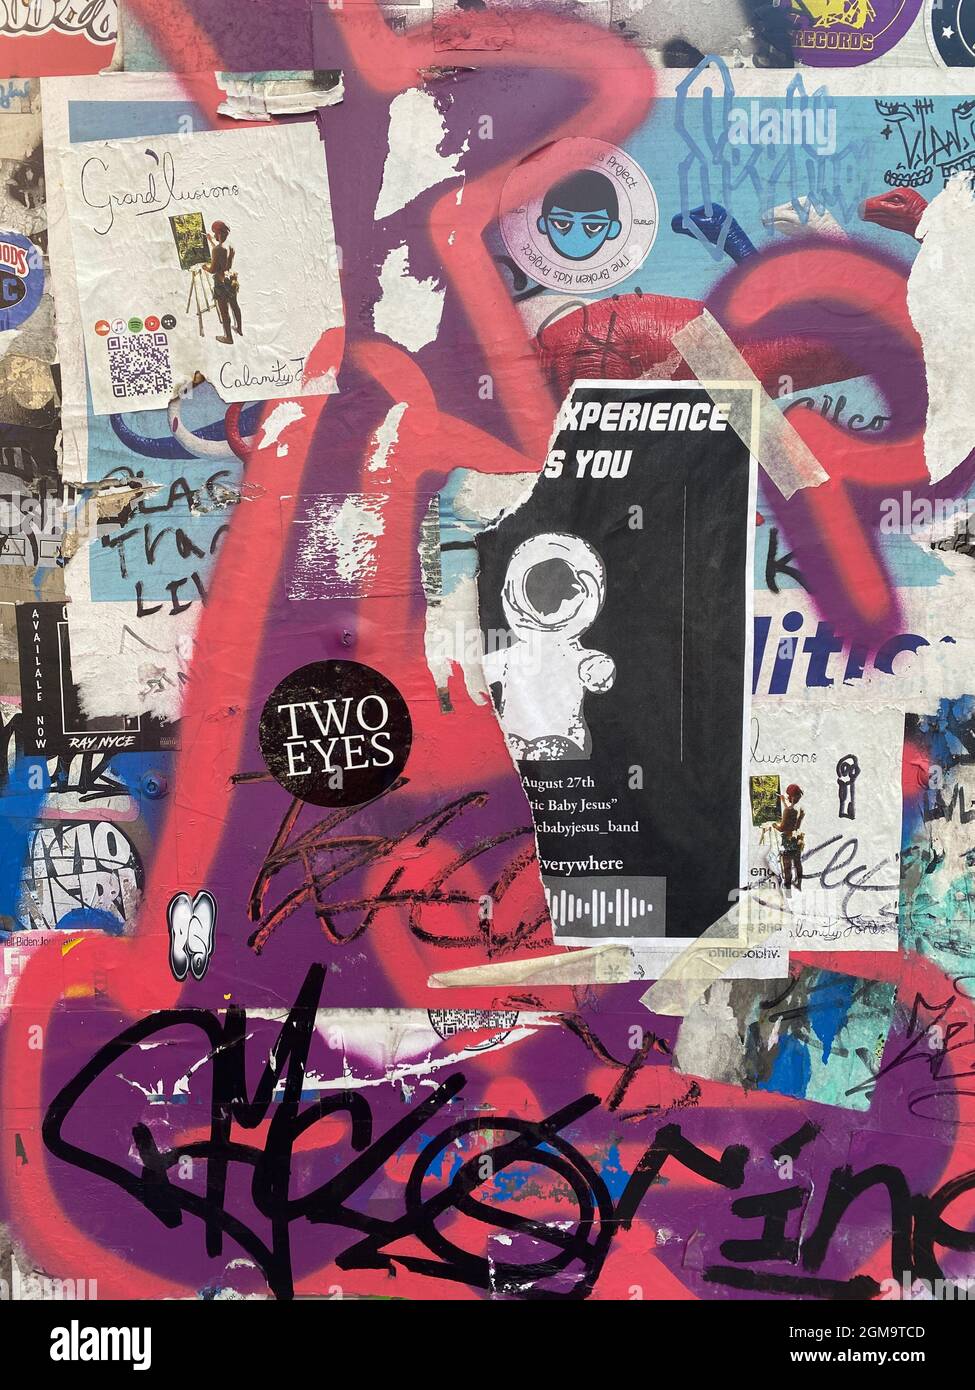 Signo de graffiti dibujadas a mano con rotuladores. Arte urbano por Chloe  Stock Fotografía de stock - Alamy